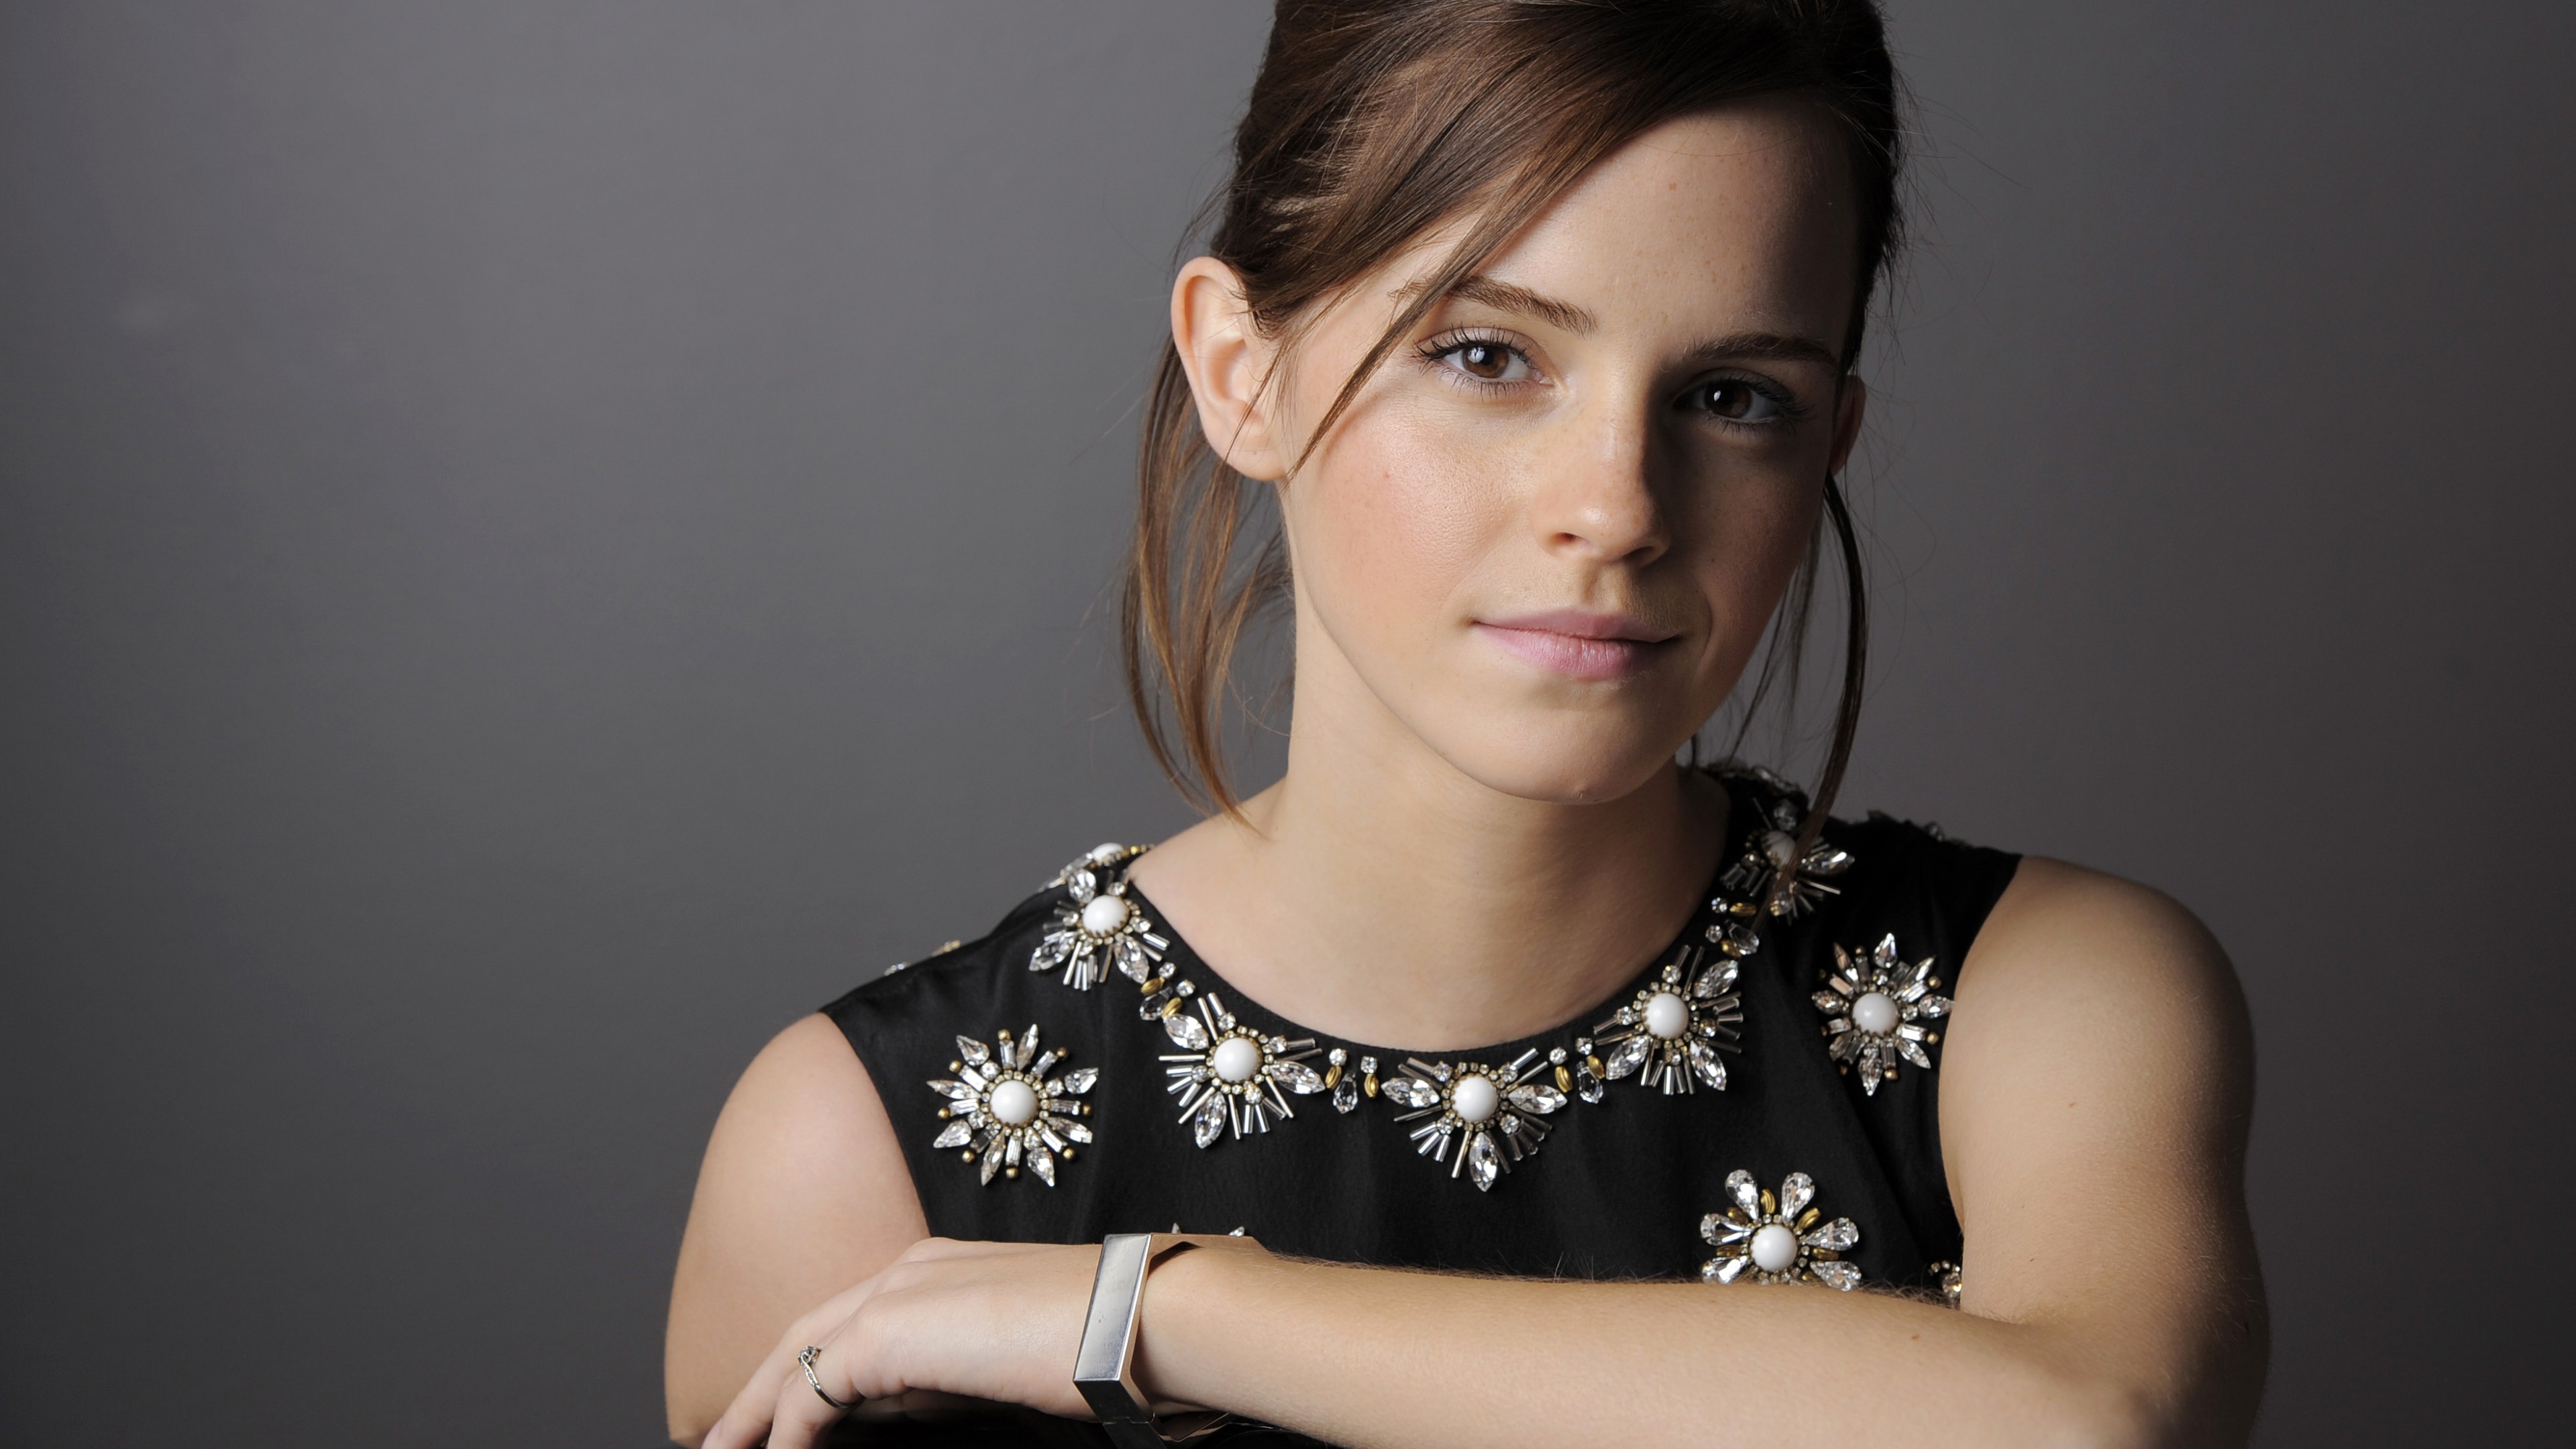 Download Celebrity Emma Watson 4k Ultra Hd Wallpaper